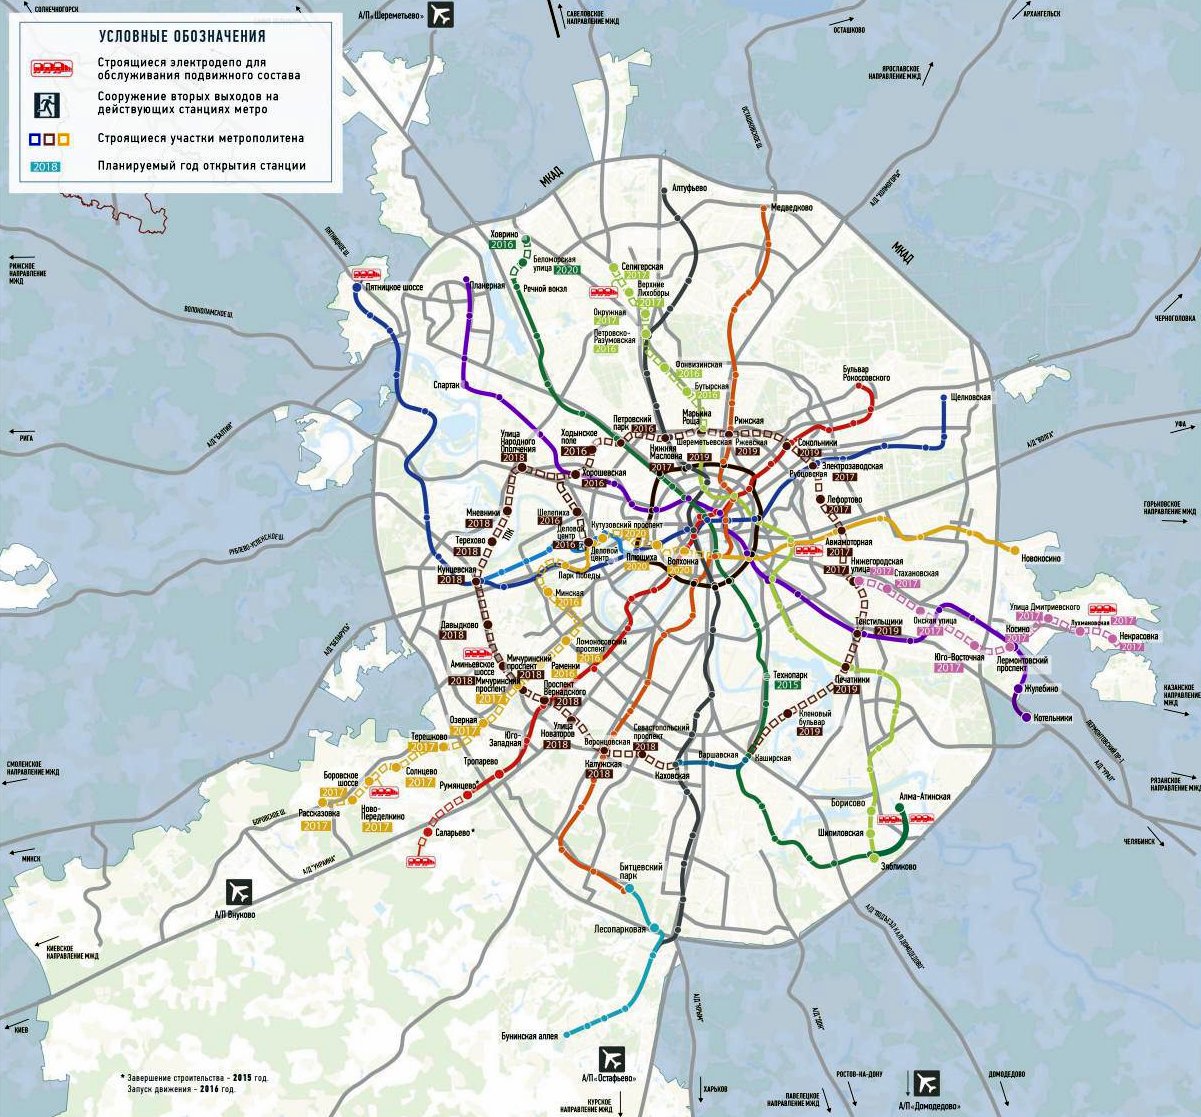 Новая карта метро до 2020 года - строительство метро в Новой Москве